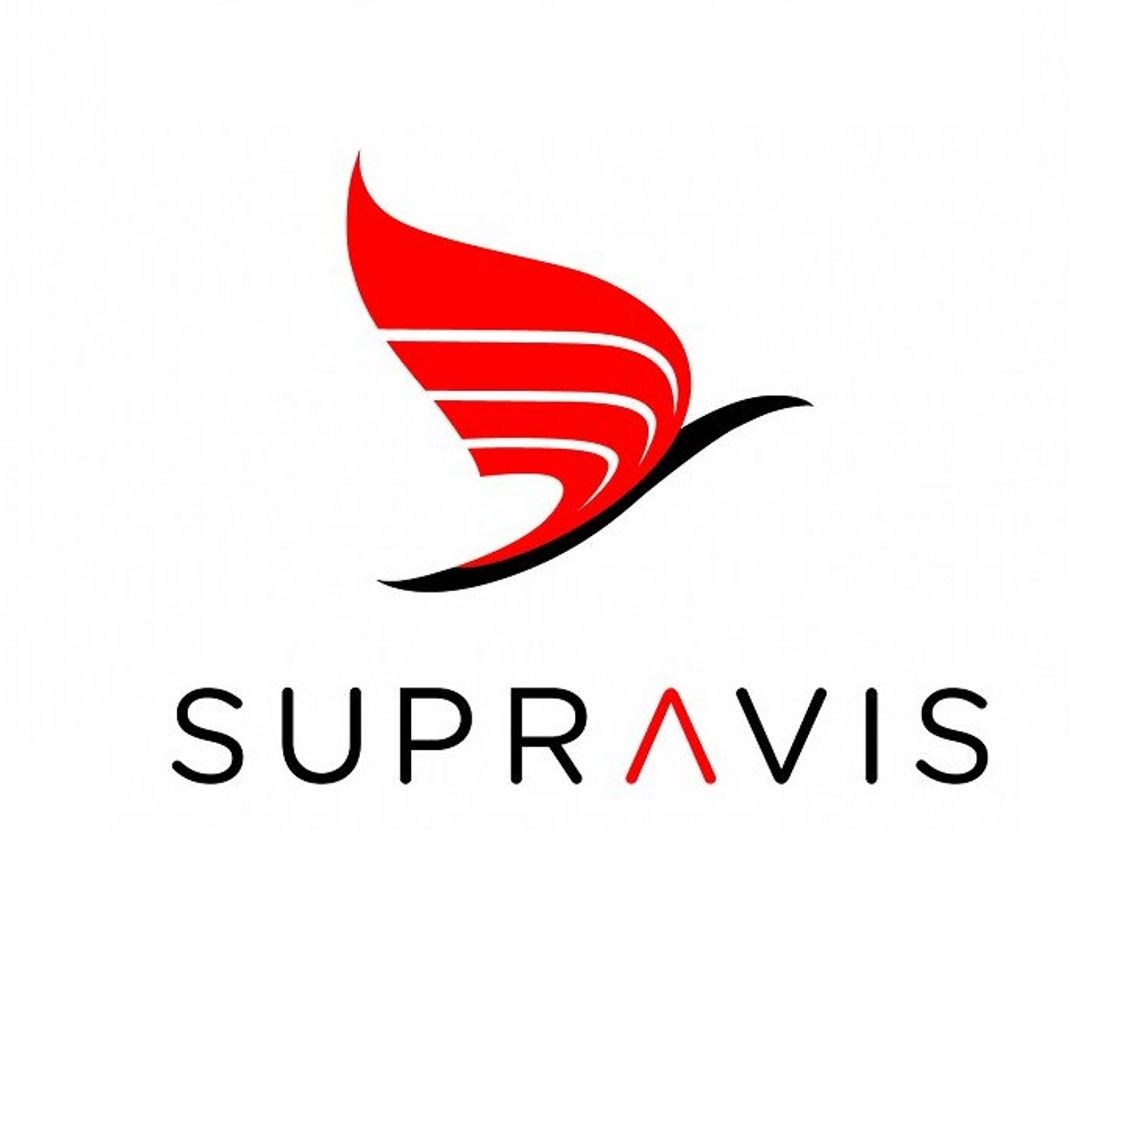 Supravis - projektowanie graficzne opakowań plastikowych